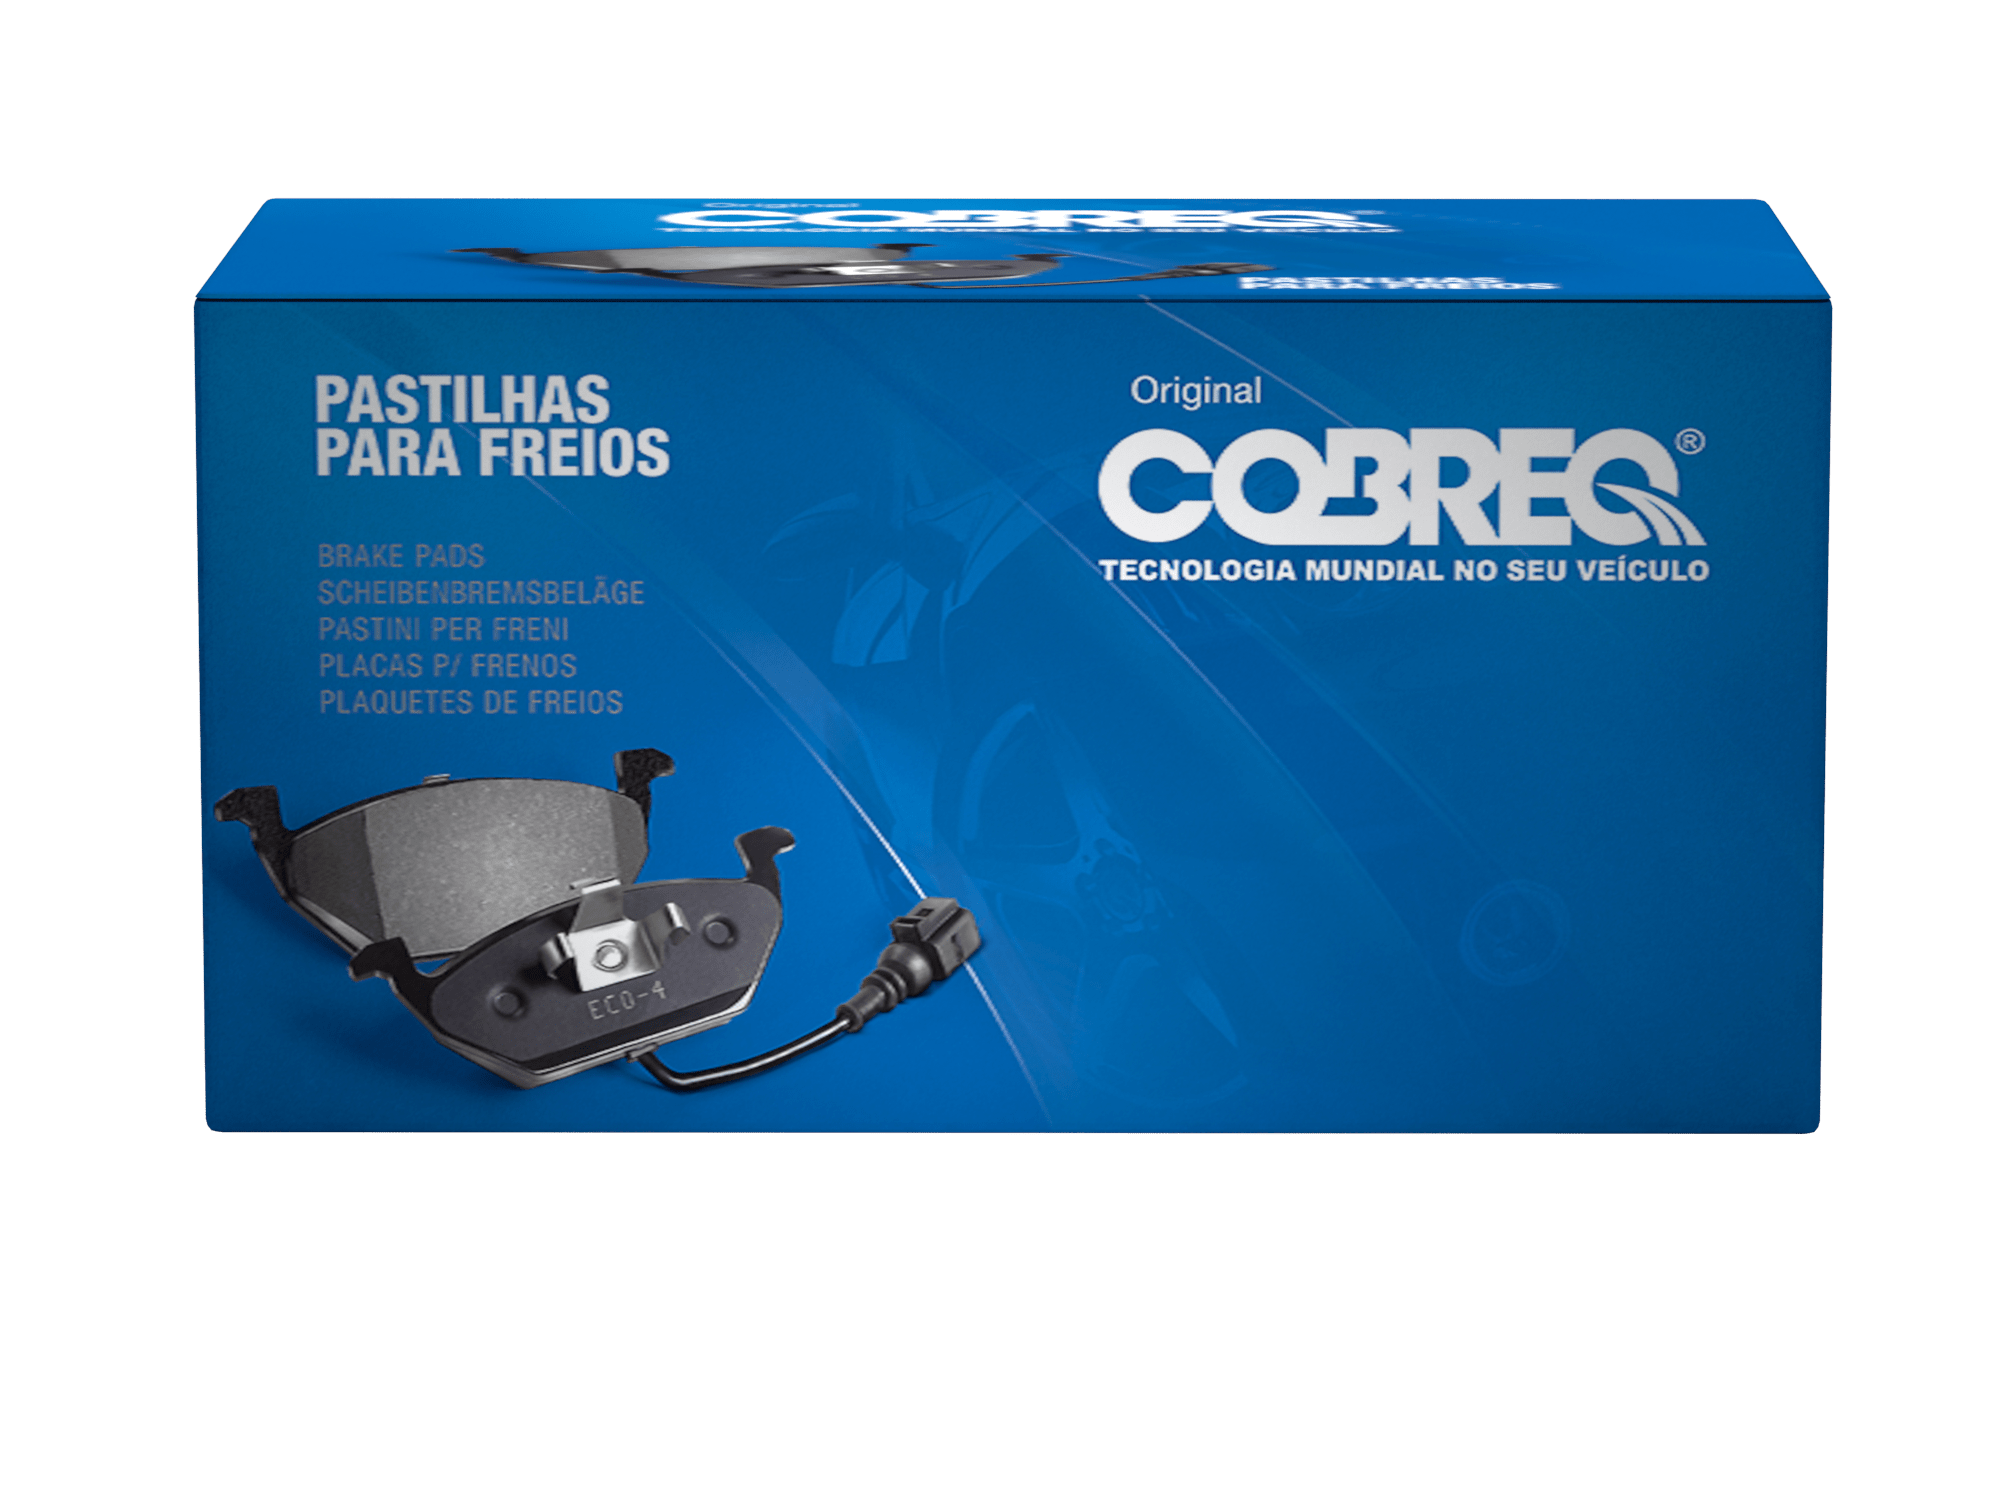 Pastilha de freio Pajero Cobreq N-1359 